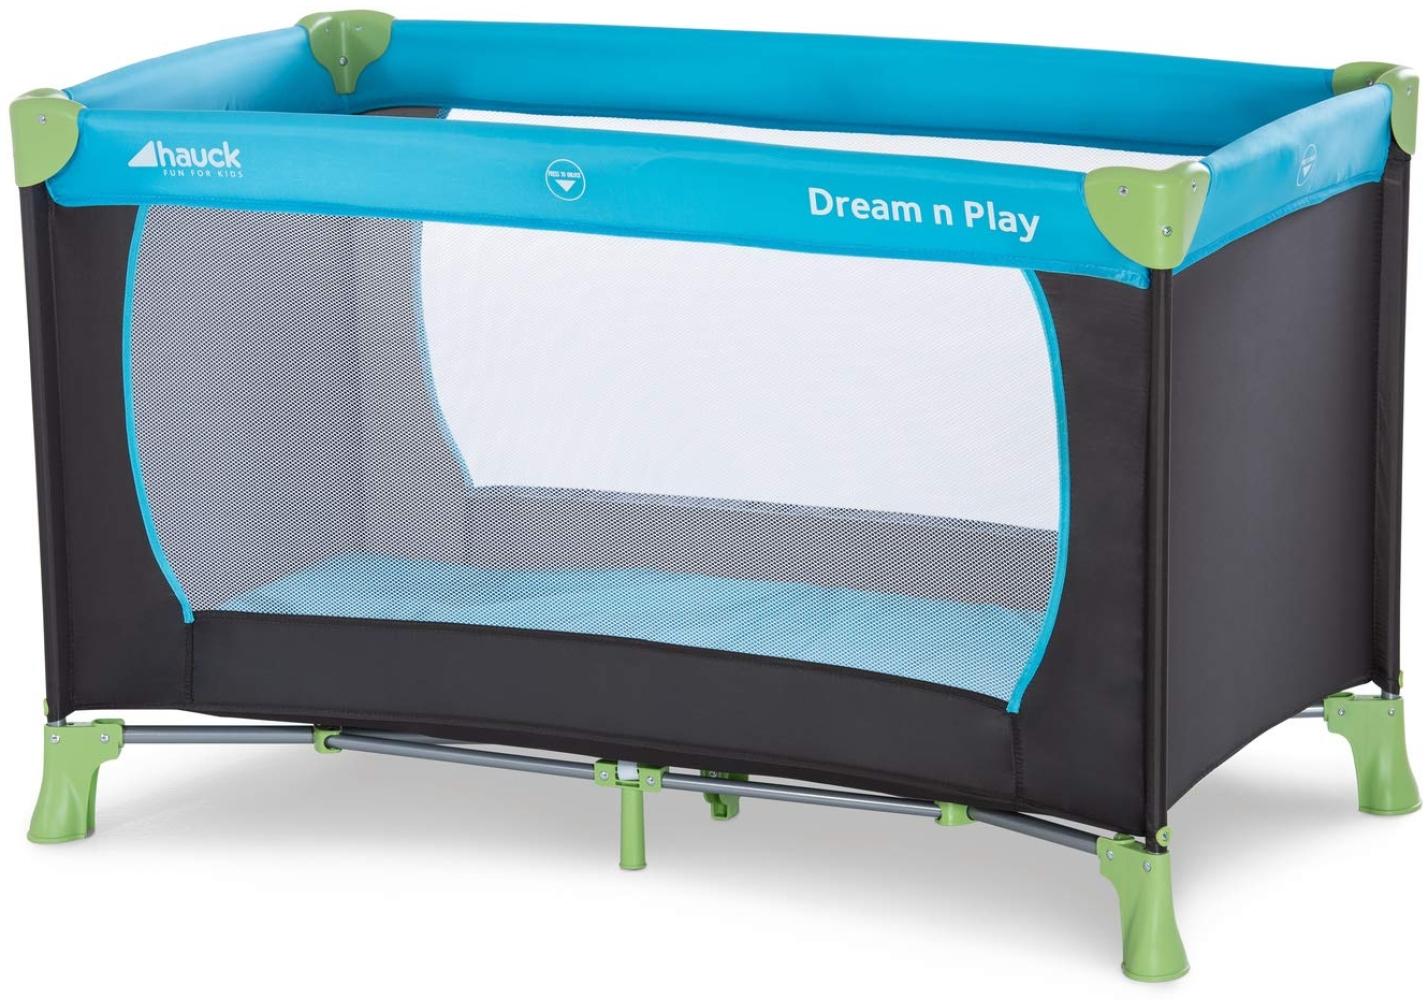 Hauck 'Dream’n Play' Reisebett 3-teilig 120 x 60 cm, ab Geburt bis 15 kg, inkl. Tragetasche und Einlageboden (faltbar, tragbar, leicht & kippsicher), blau Bild 1